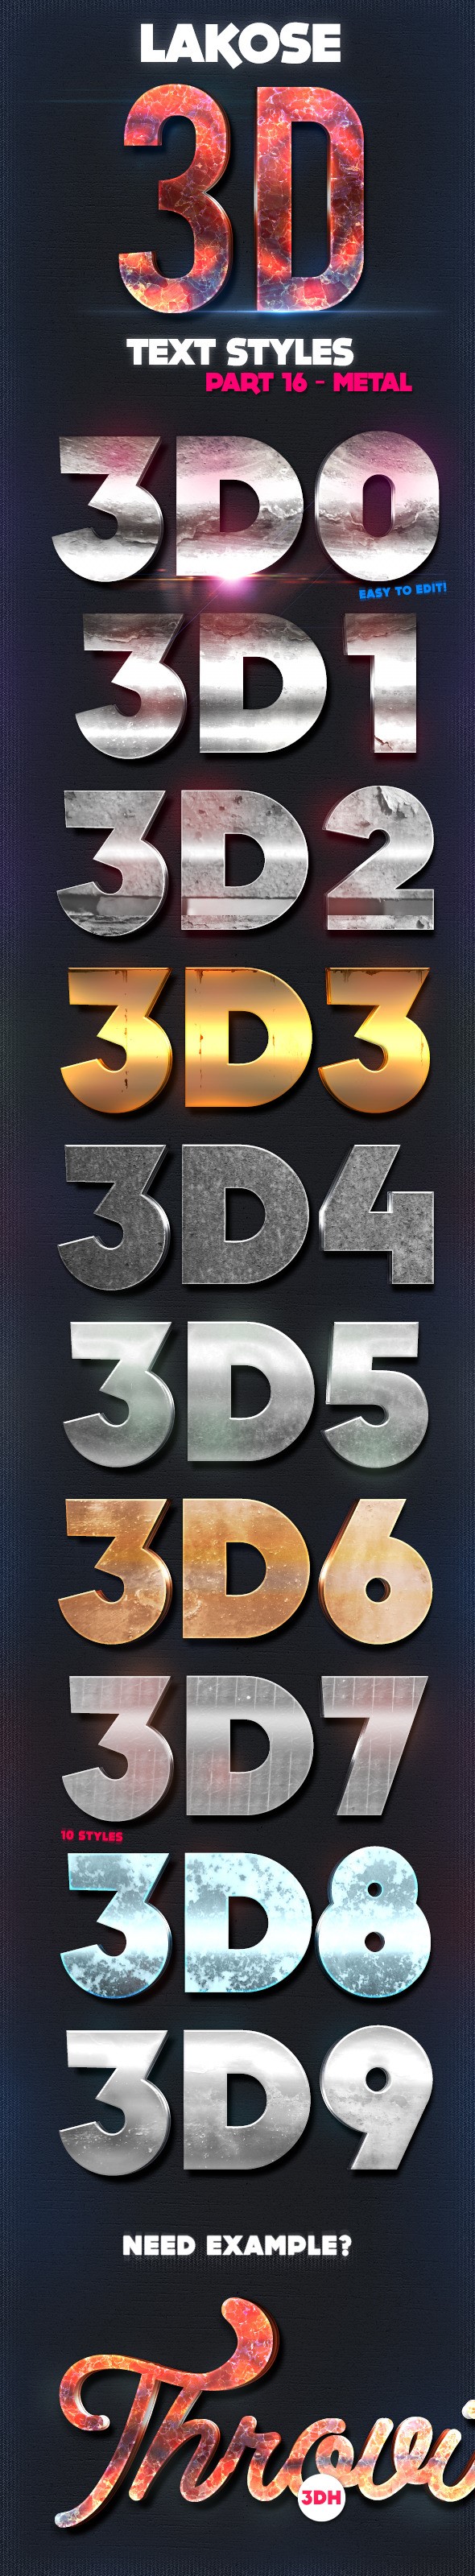 سبک های متن سه بعدی 3D Lakose قسمت 16